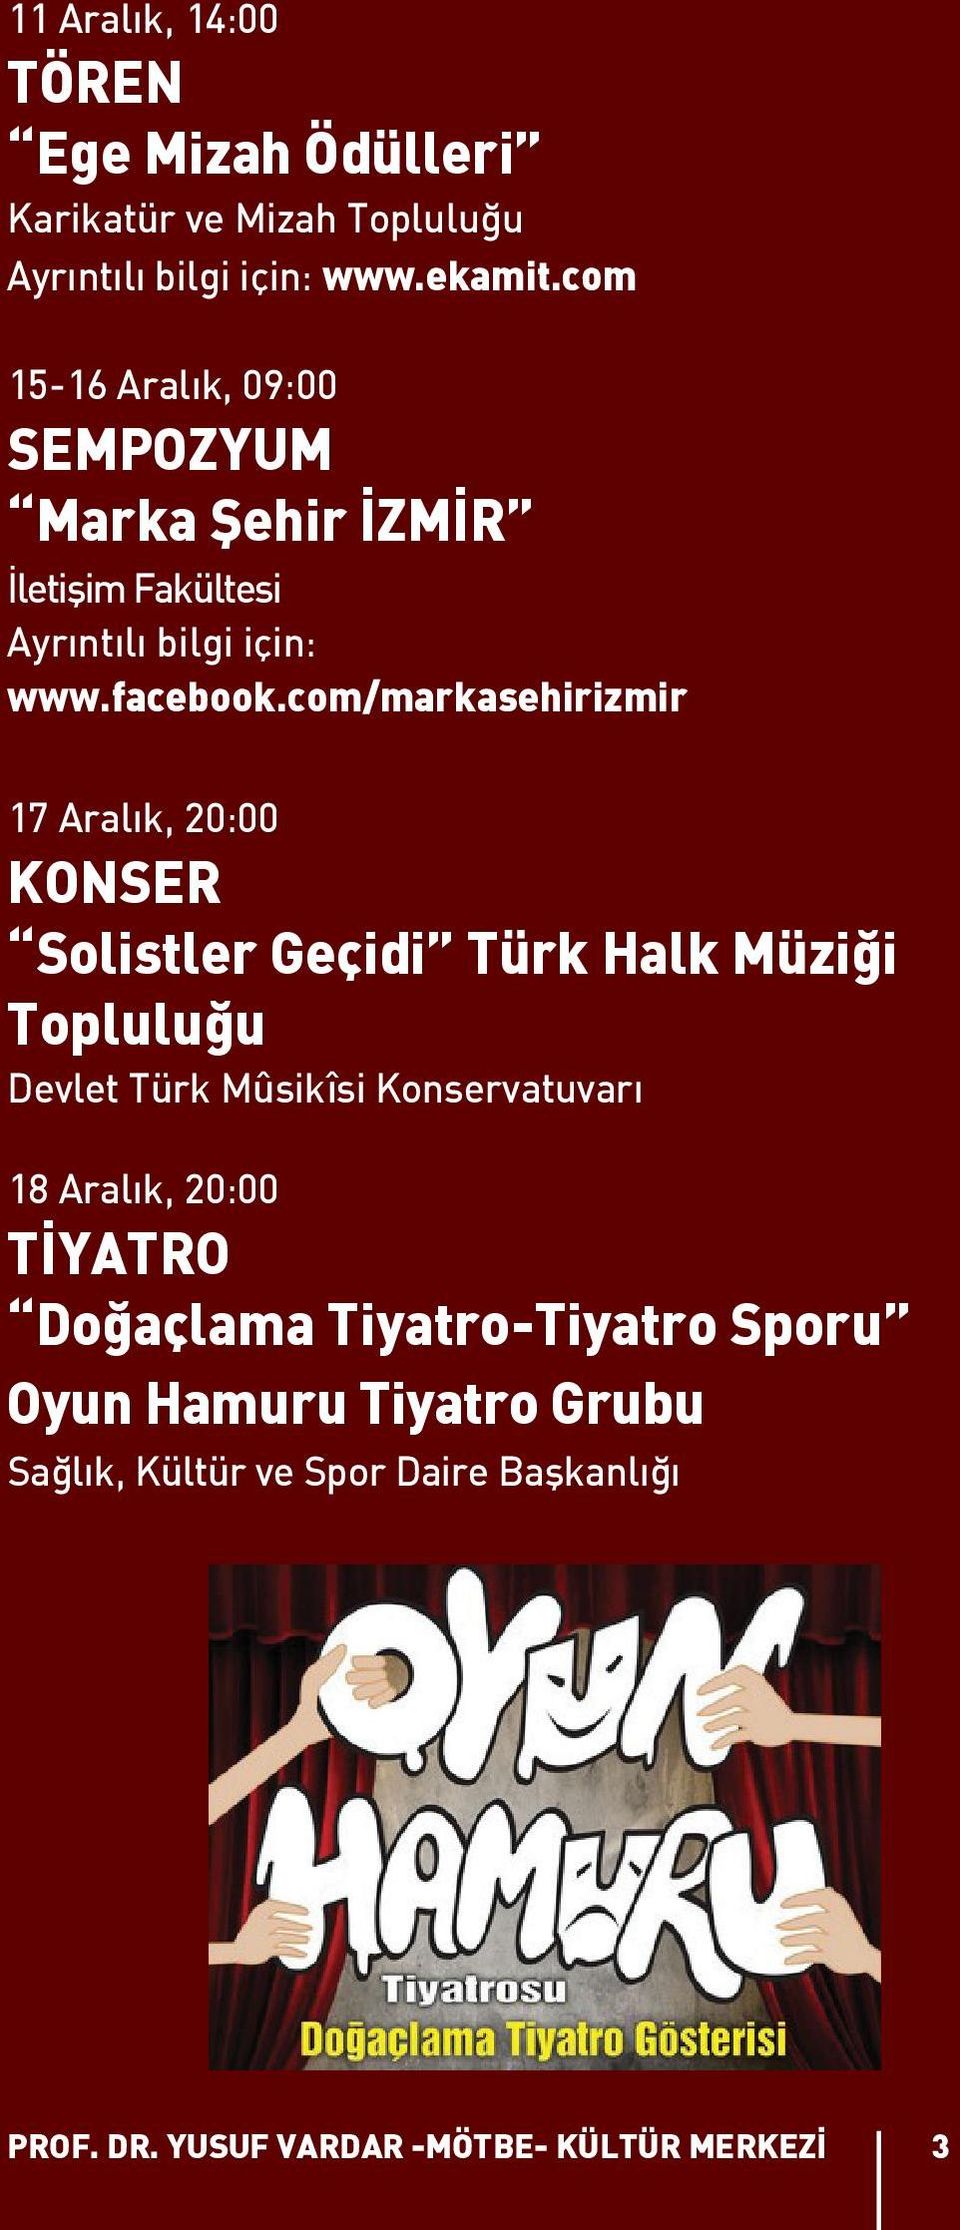 com/markasehirizmir 17 Aralık, 20:00 KONSER Solistler Geçidi Türk Halk Müziği Topluluğu Devlet Türk Mûsikîsi Konservatuvarı